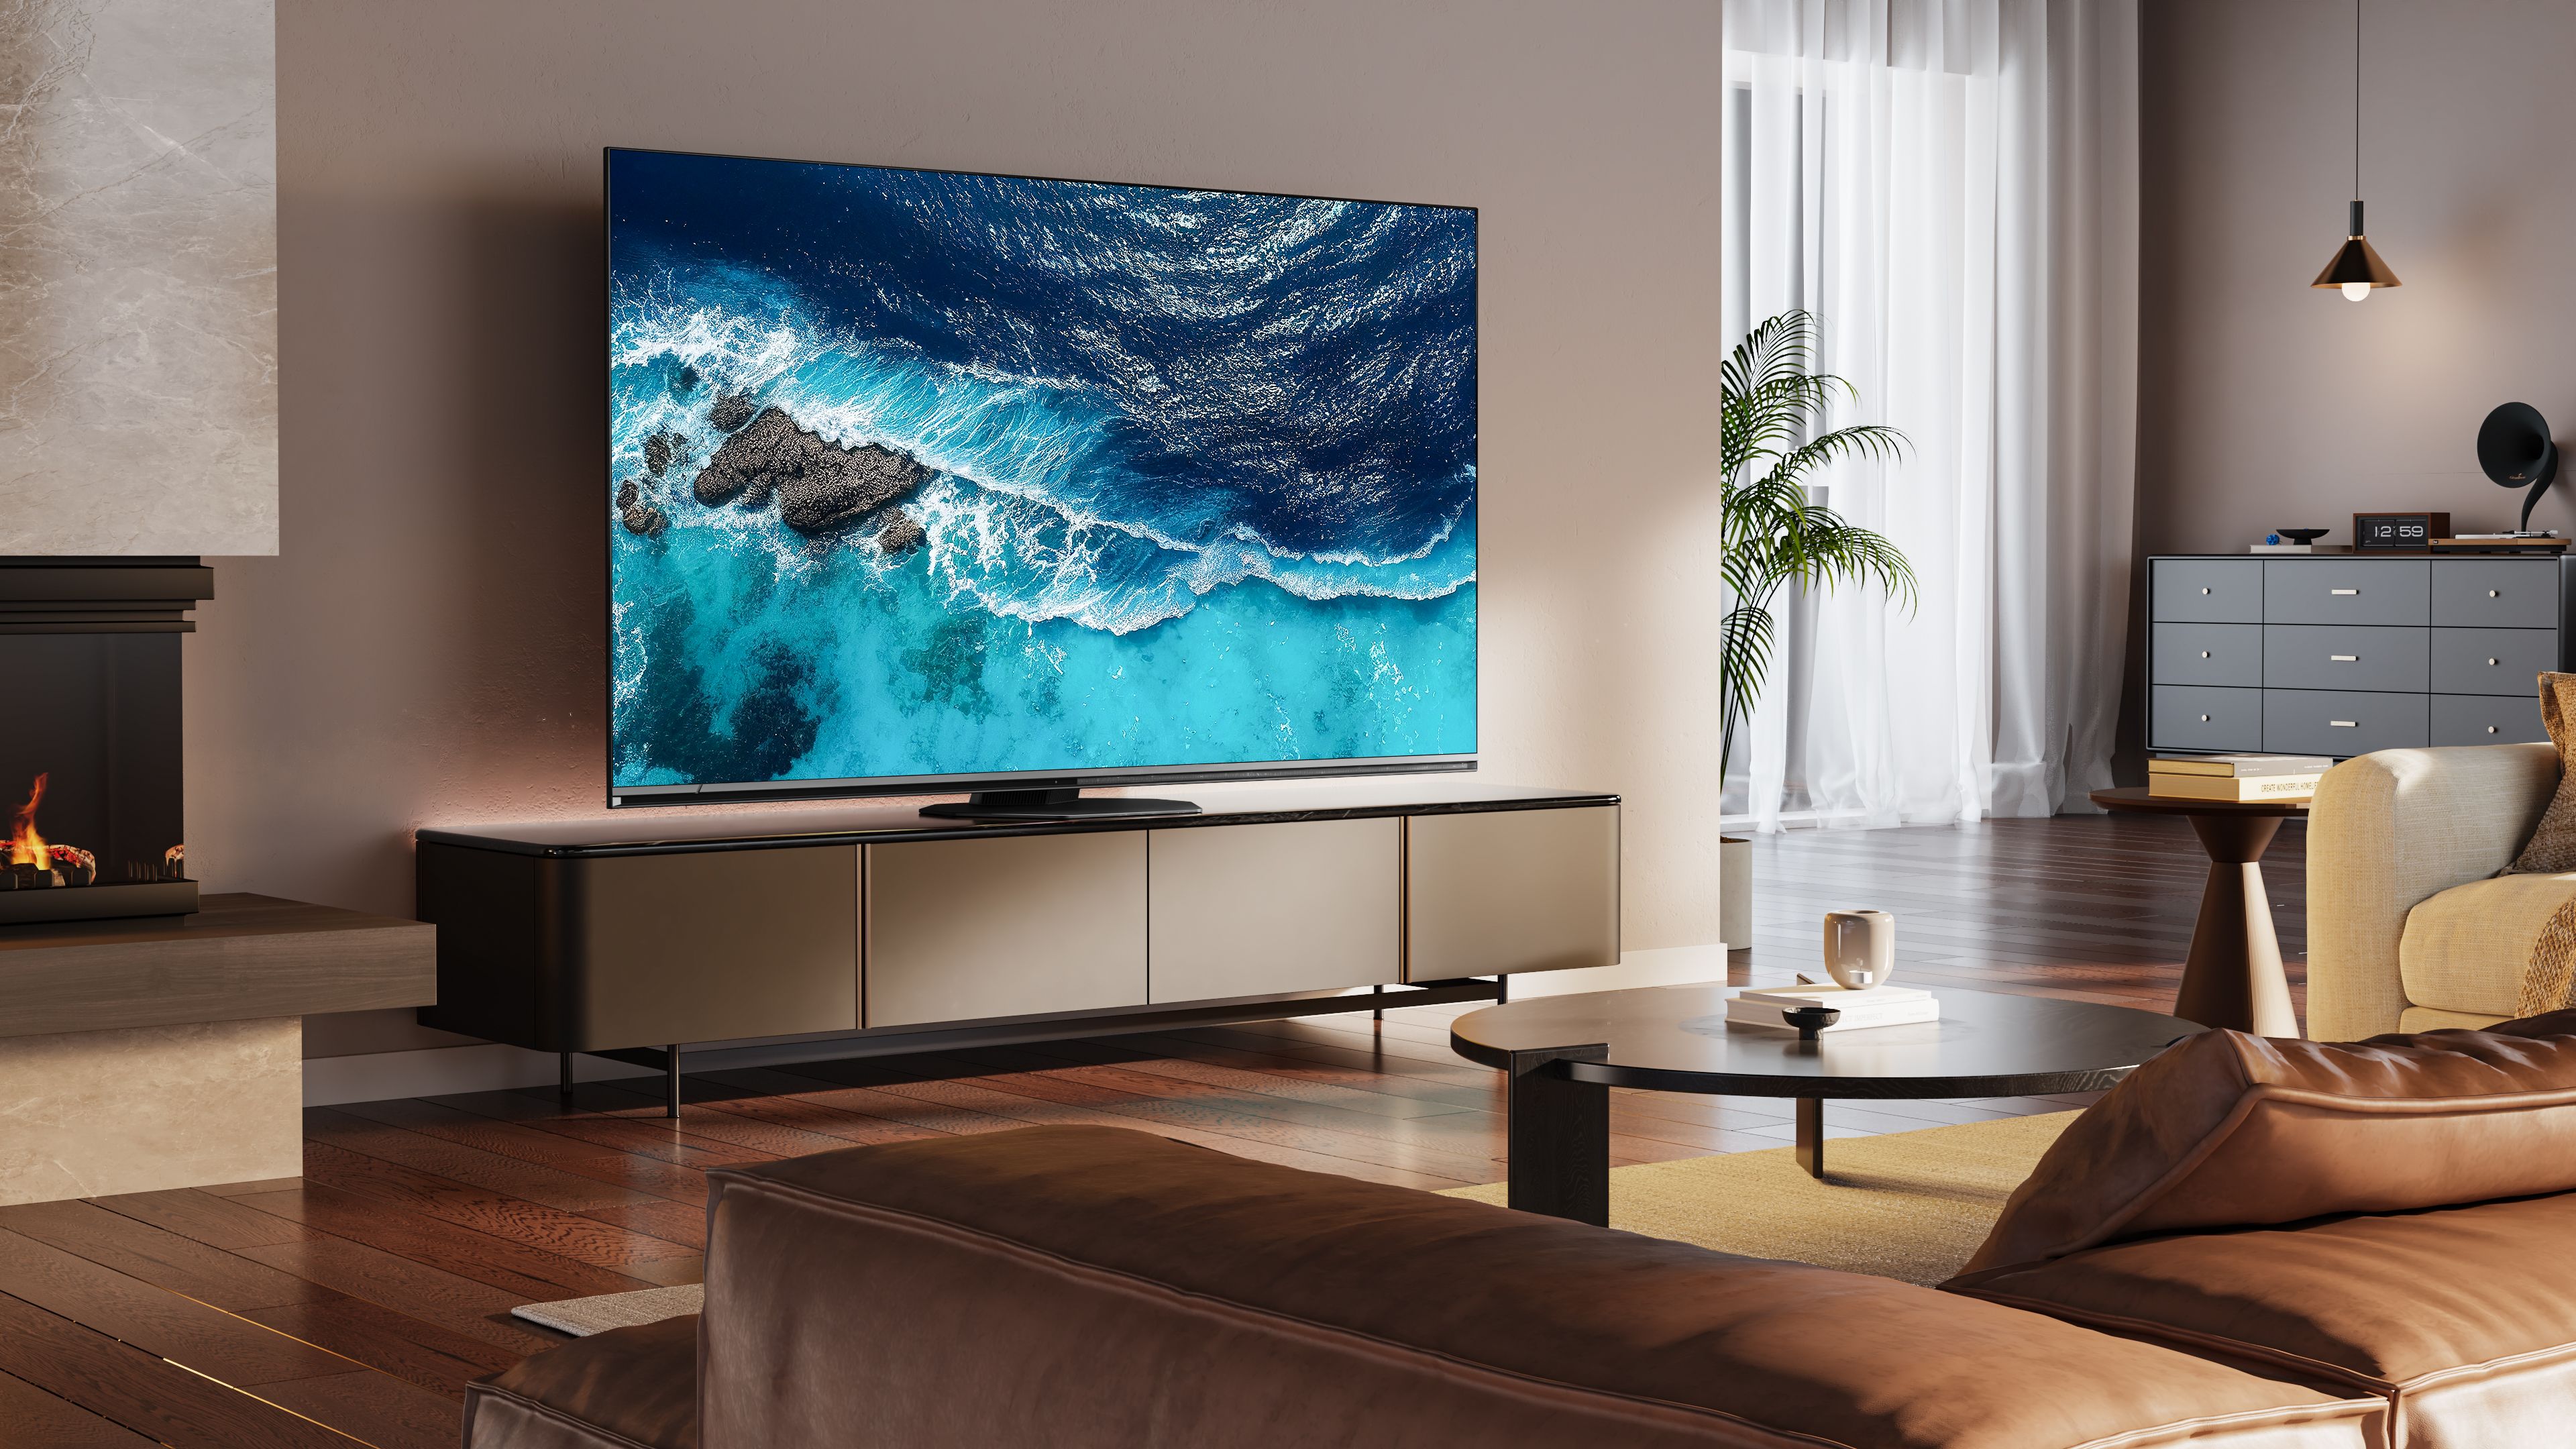 Hisense U8N Mini-LED TV on stand in living room